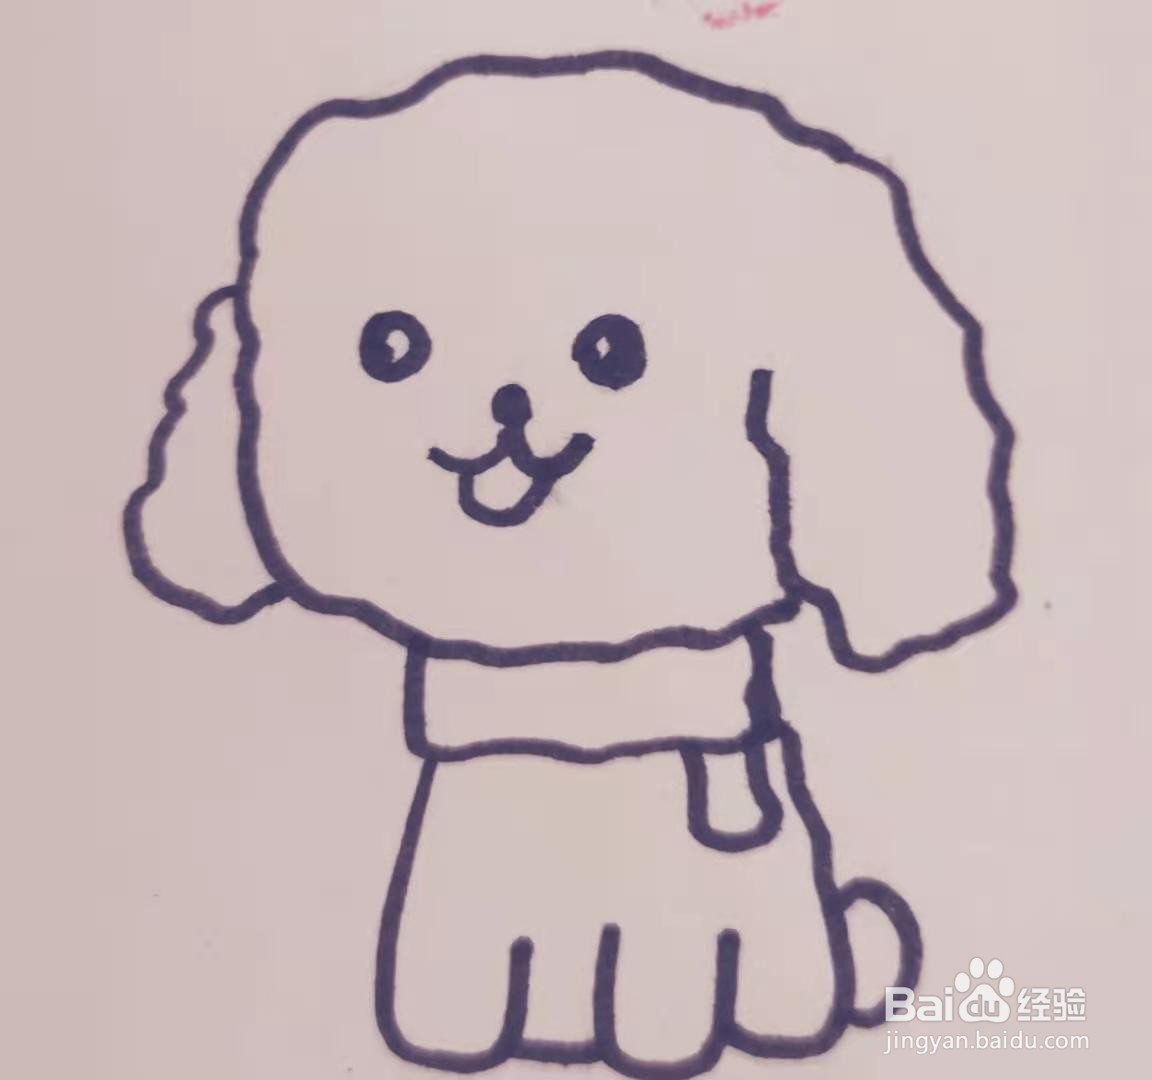 泰迪犬简笔画幼犬图片